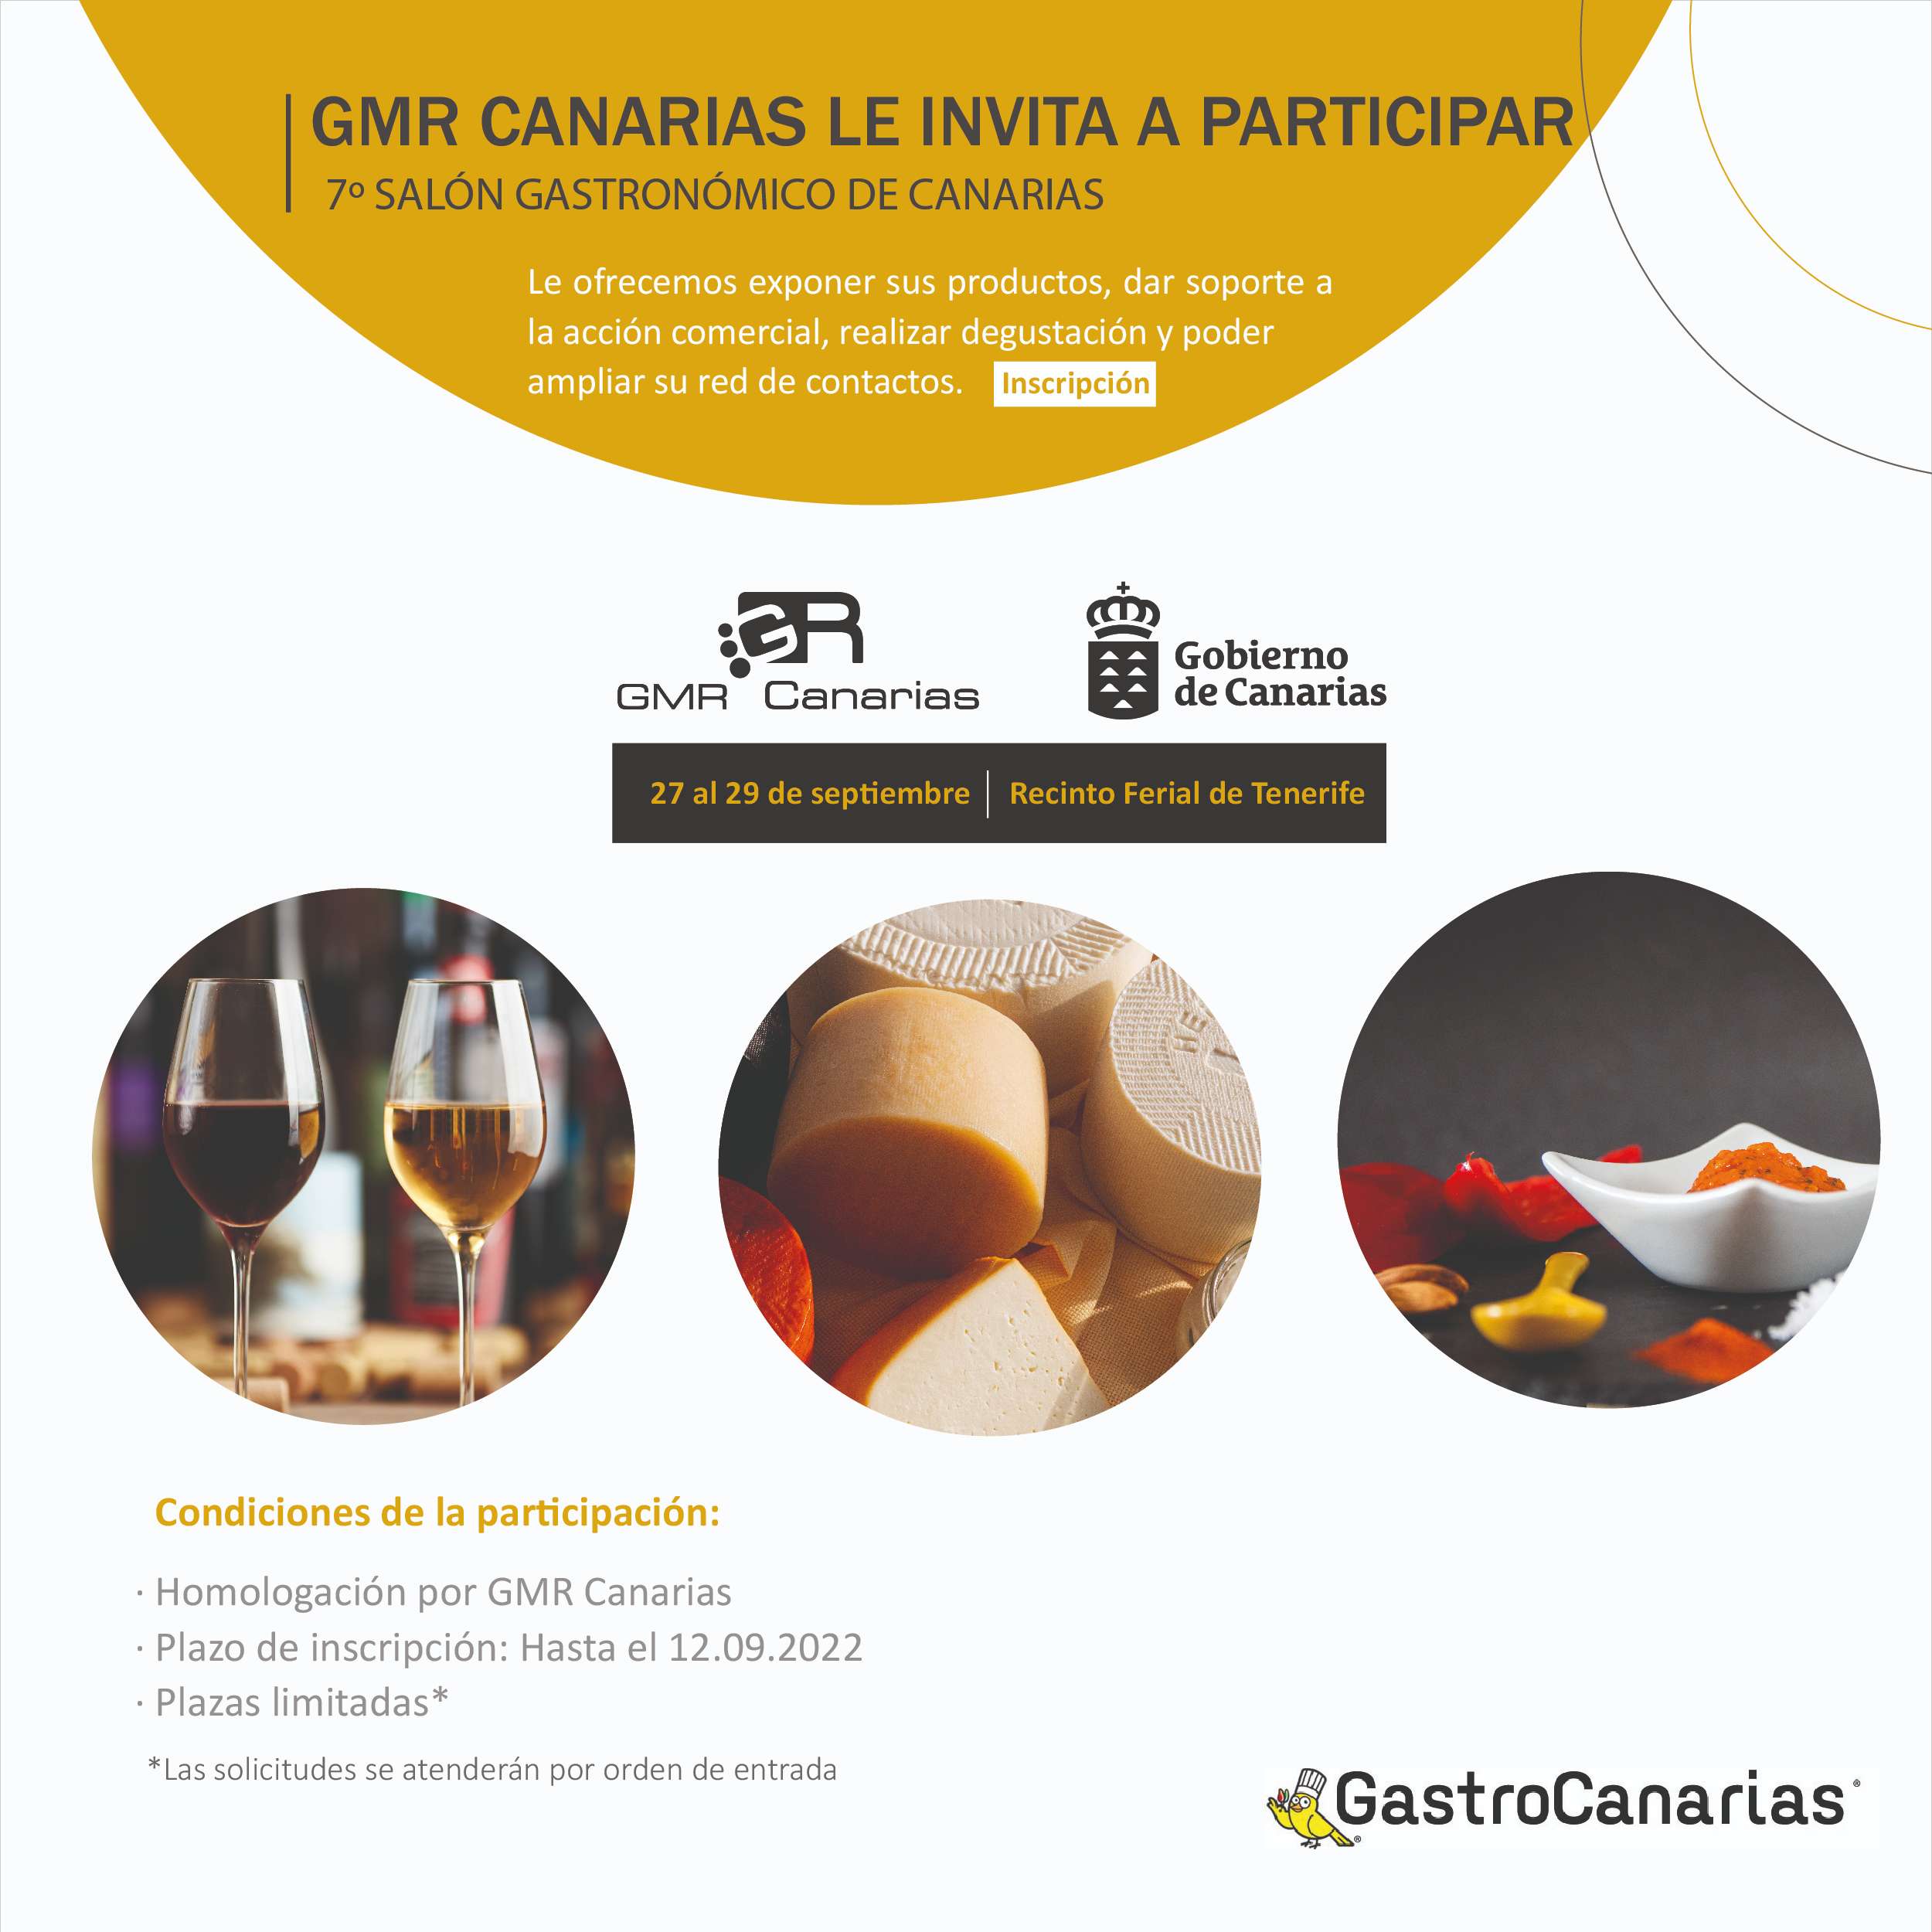 GMR Canarias le invita a participar en el 7º Salón Gastronómico de Canarias, Gastrocanarias 2022